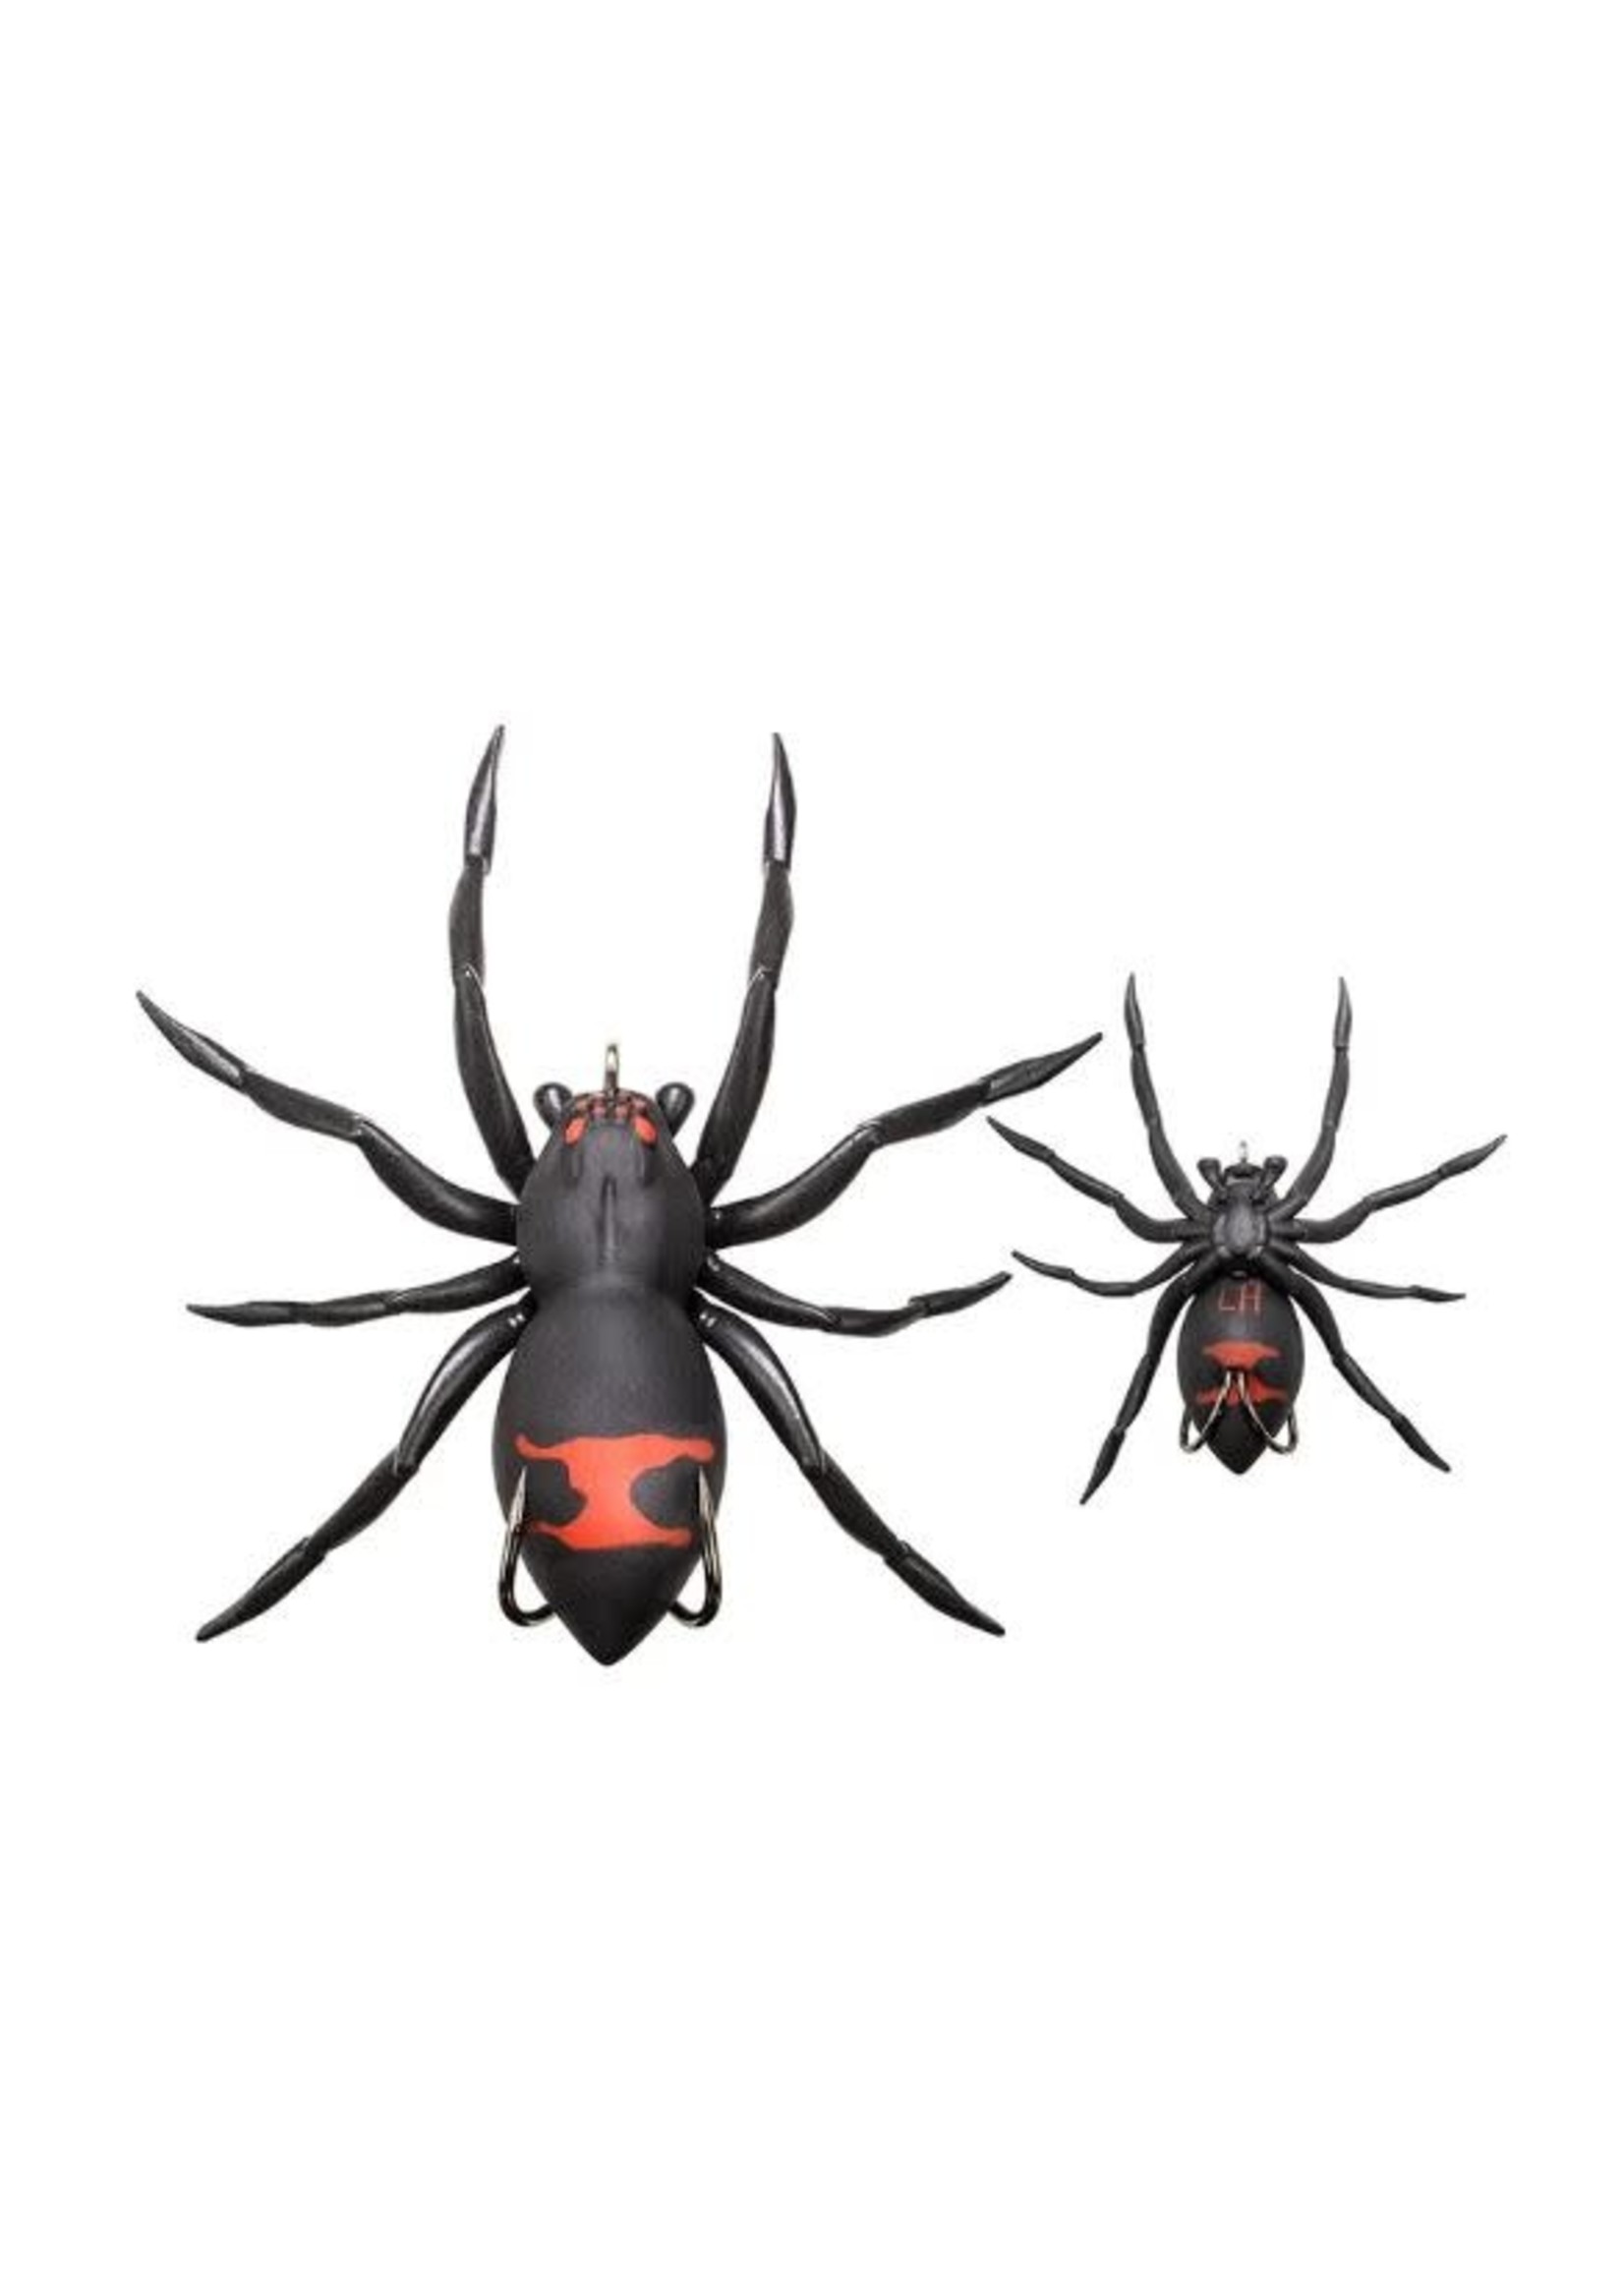 Lunkerhunt Phantom Spider - 2" Widow Maker